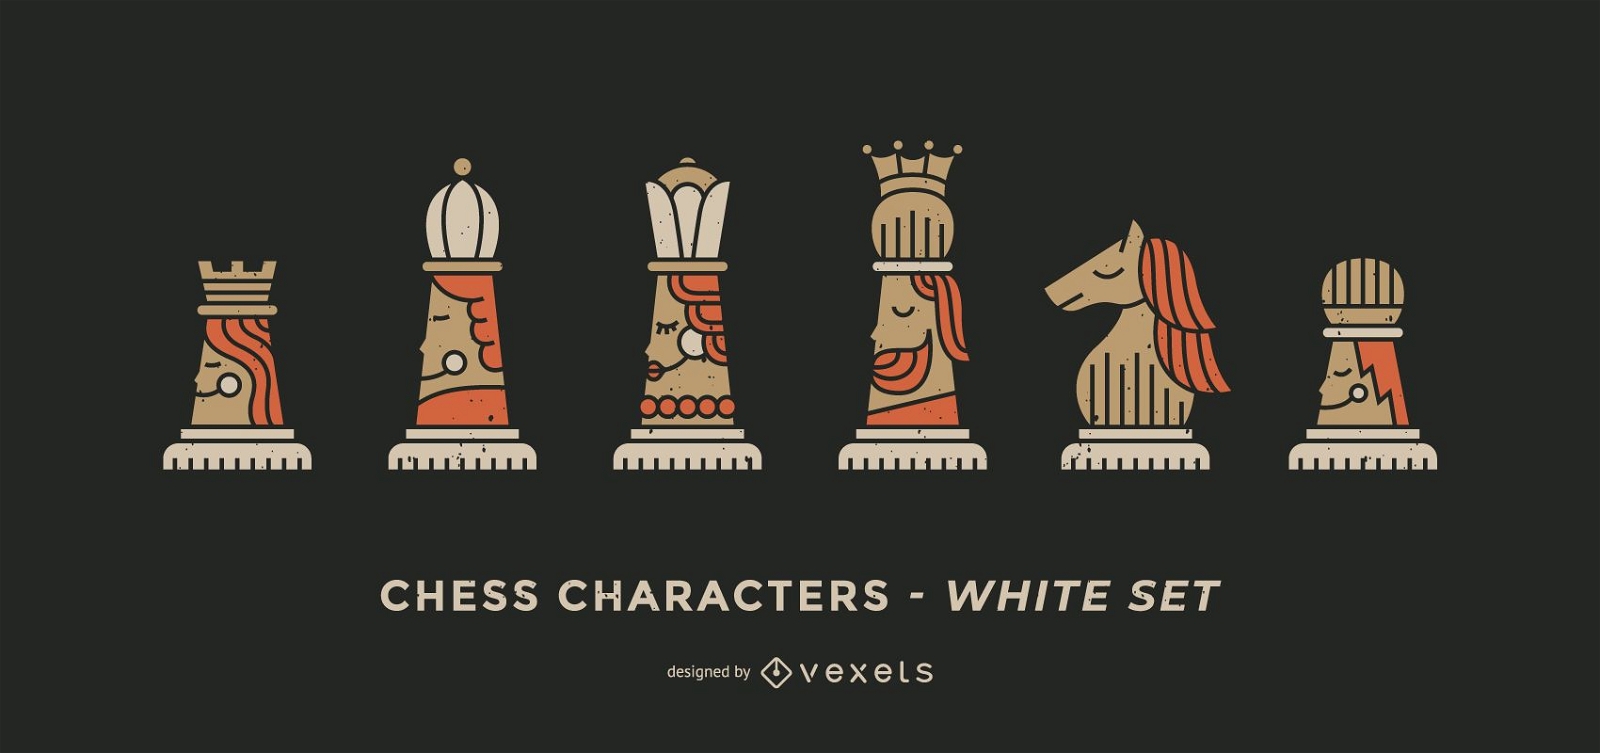 Juego de personajes de ajedrez blanco